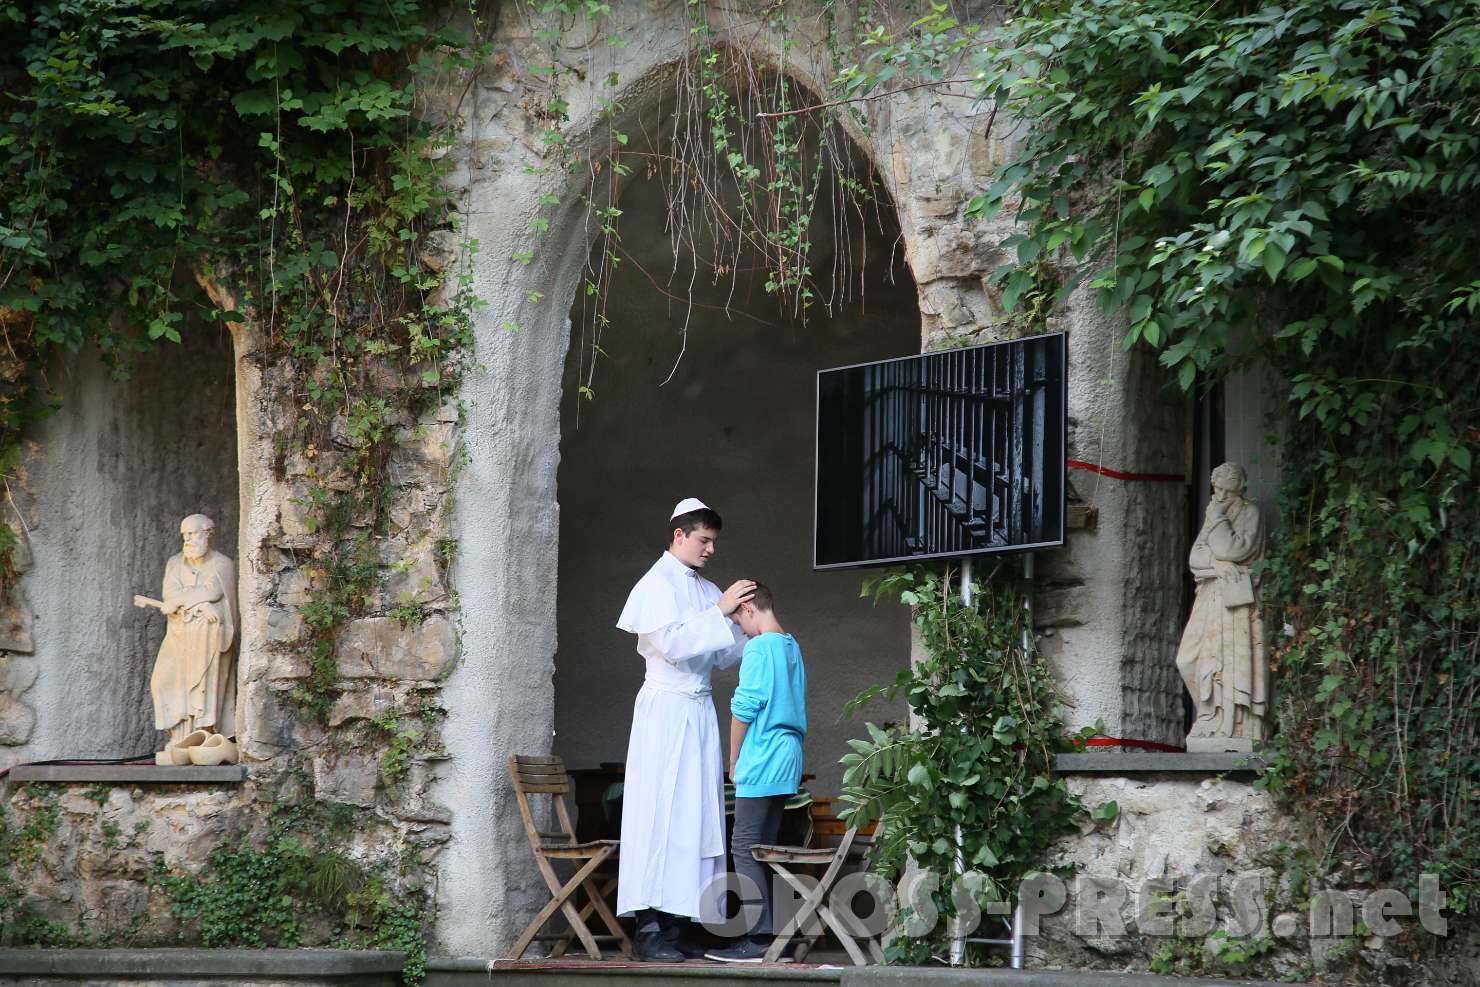 2017.07.29_18.45.09.jpg - Der Papst besucht den Attentäter im Gefängnis und vergibt ihm.